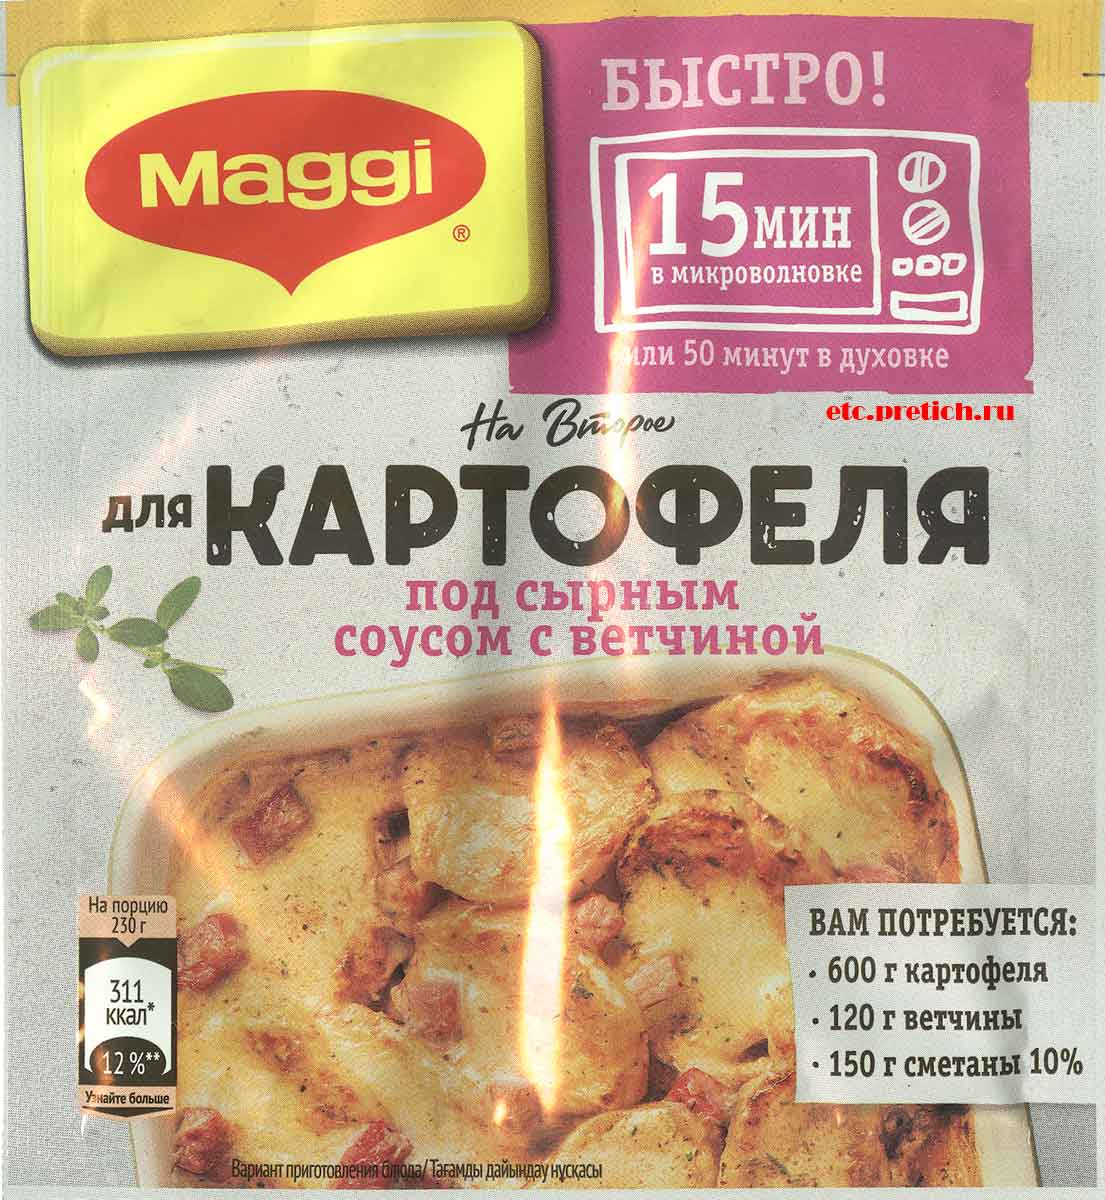 Приправа Maggi для картофеля под сырным соусом с ветчиной описание